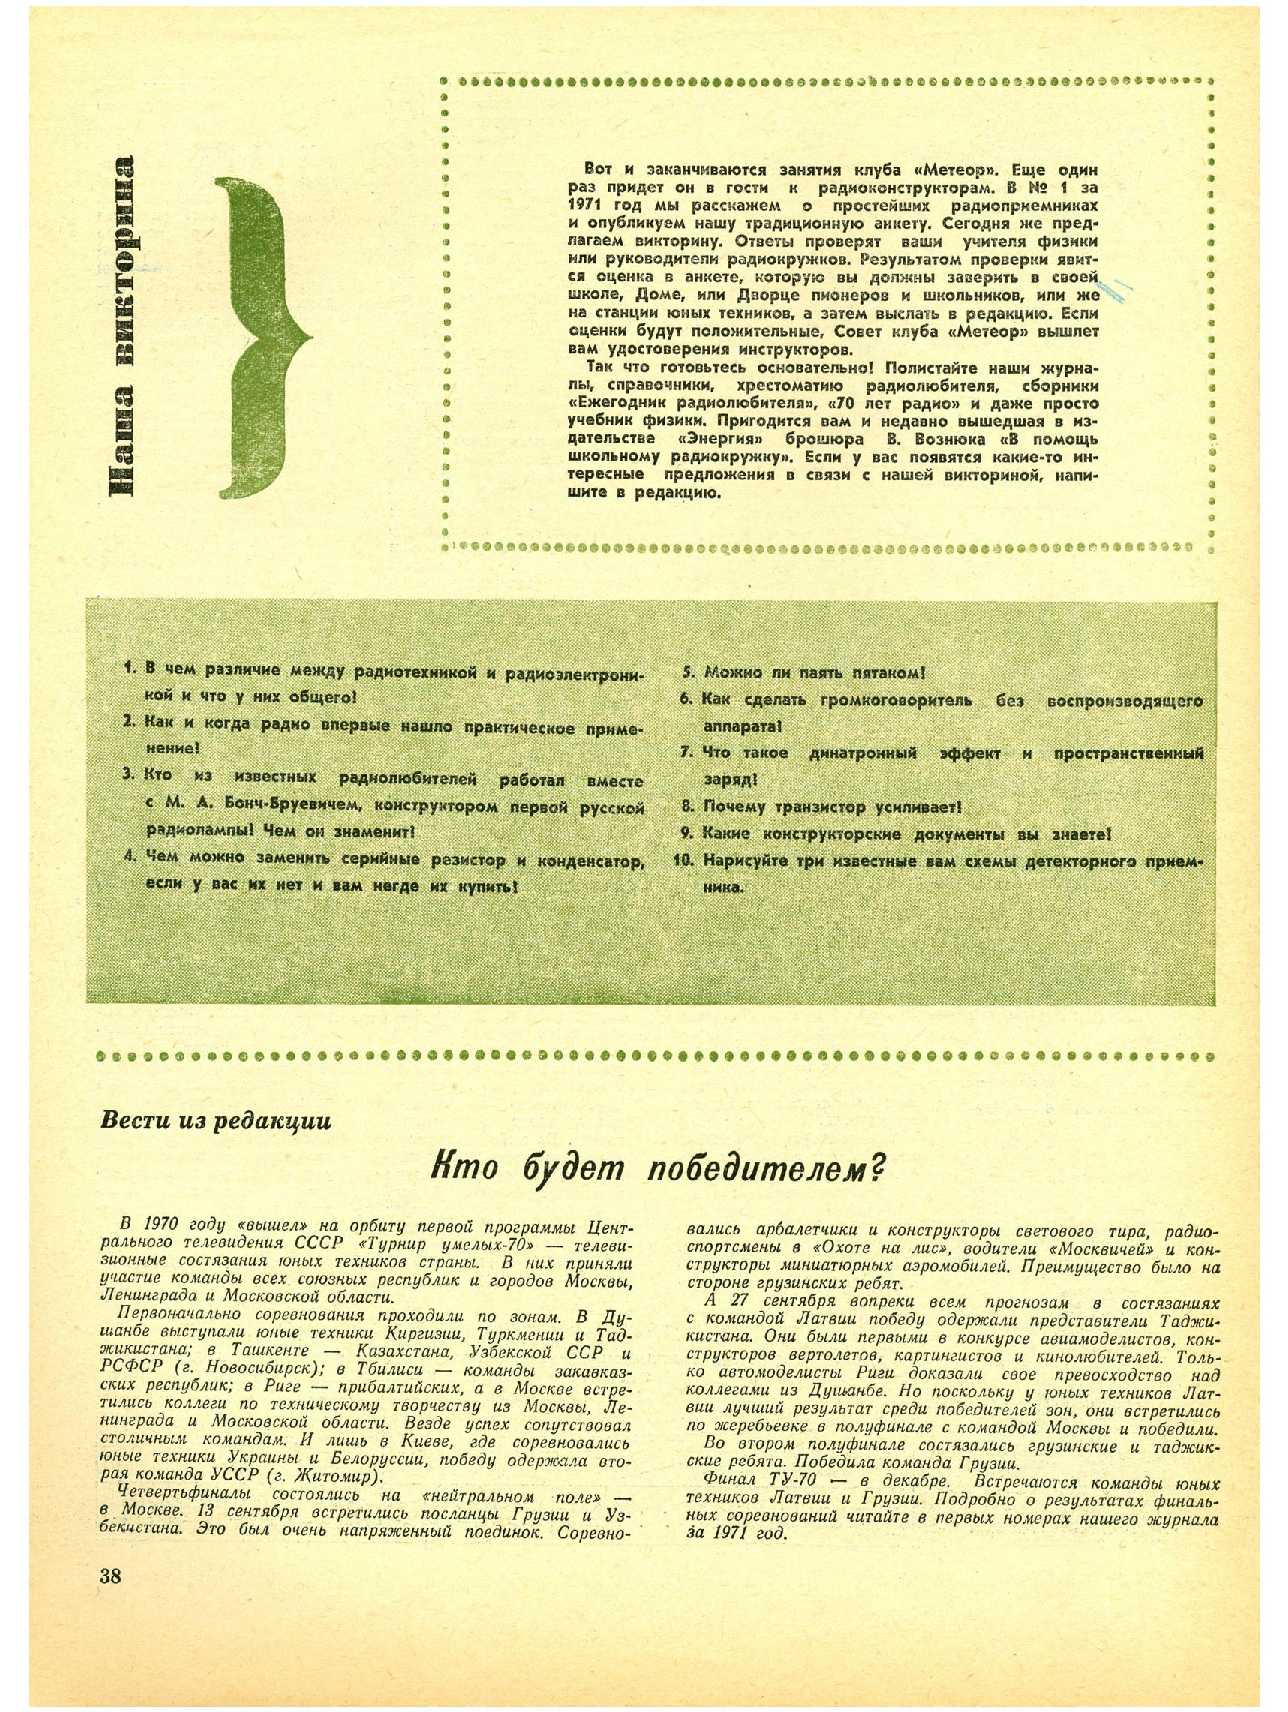 МК 12, 1970, 38 c.